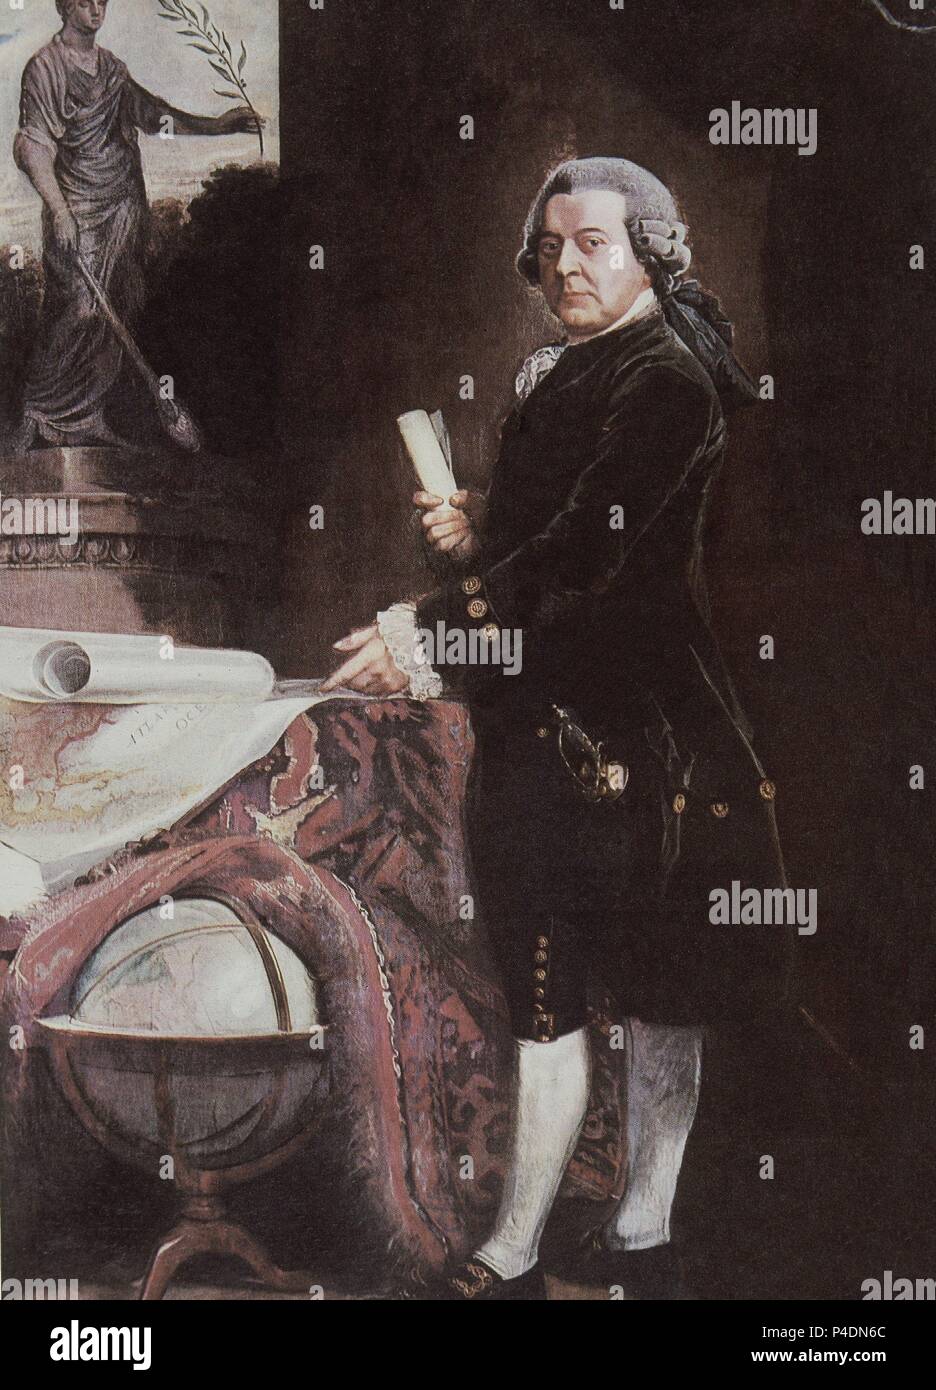 JOHN ADAMS (1735-1826) - POLITICO NORTEAMERICANO - SEGUNDO PRESIDENTE DE LOS ESTADOS UNIDOS. Stock Photo